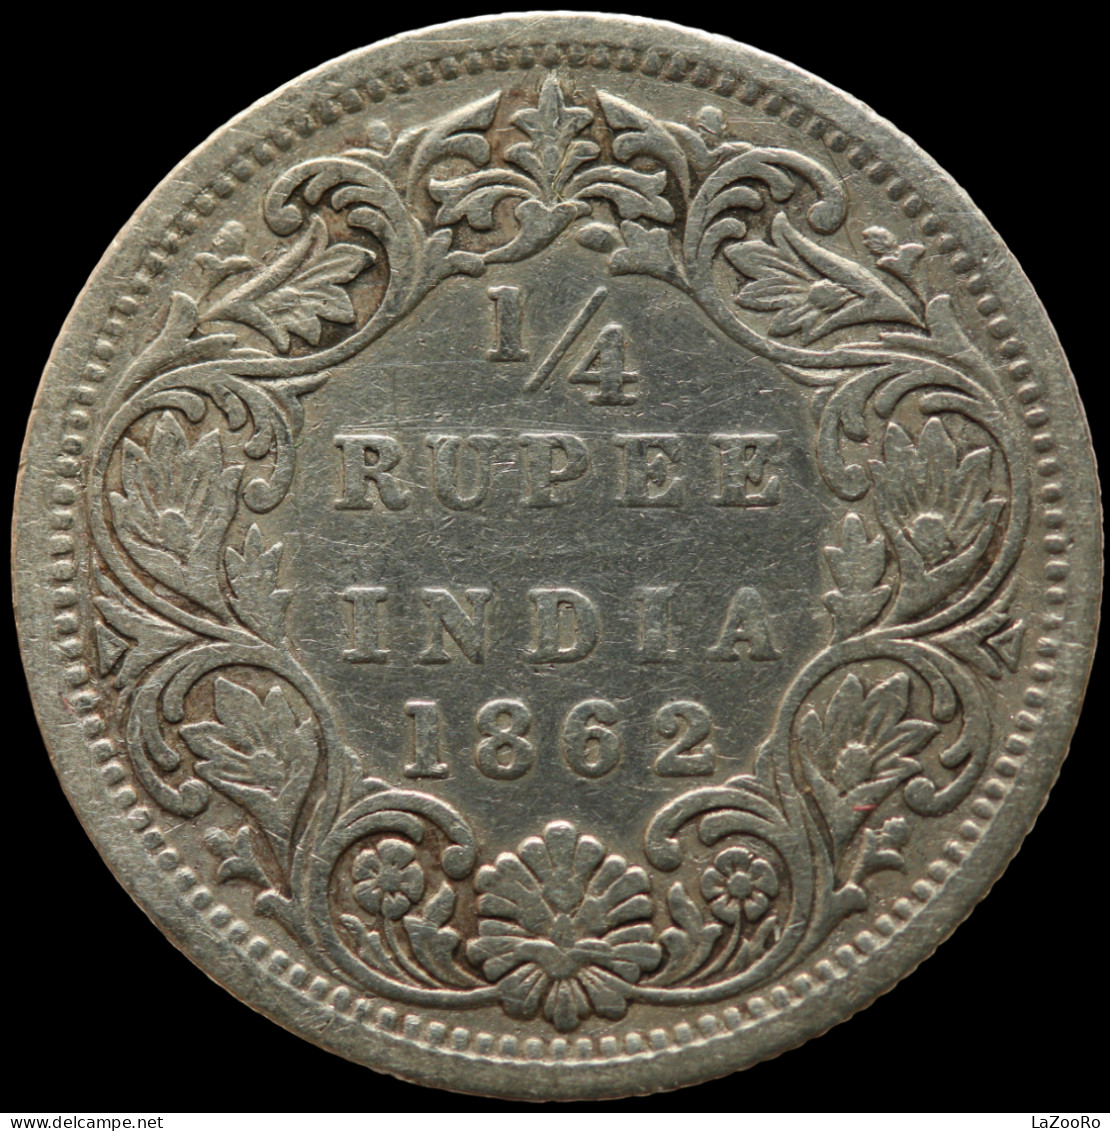 LaZooRo: British India 1/4 Rupee 1862 VF - Silver - Colonie